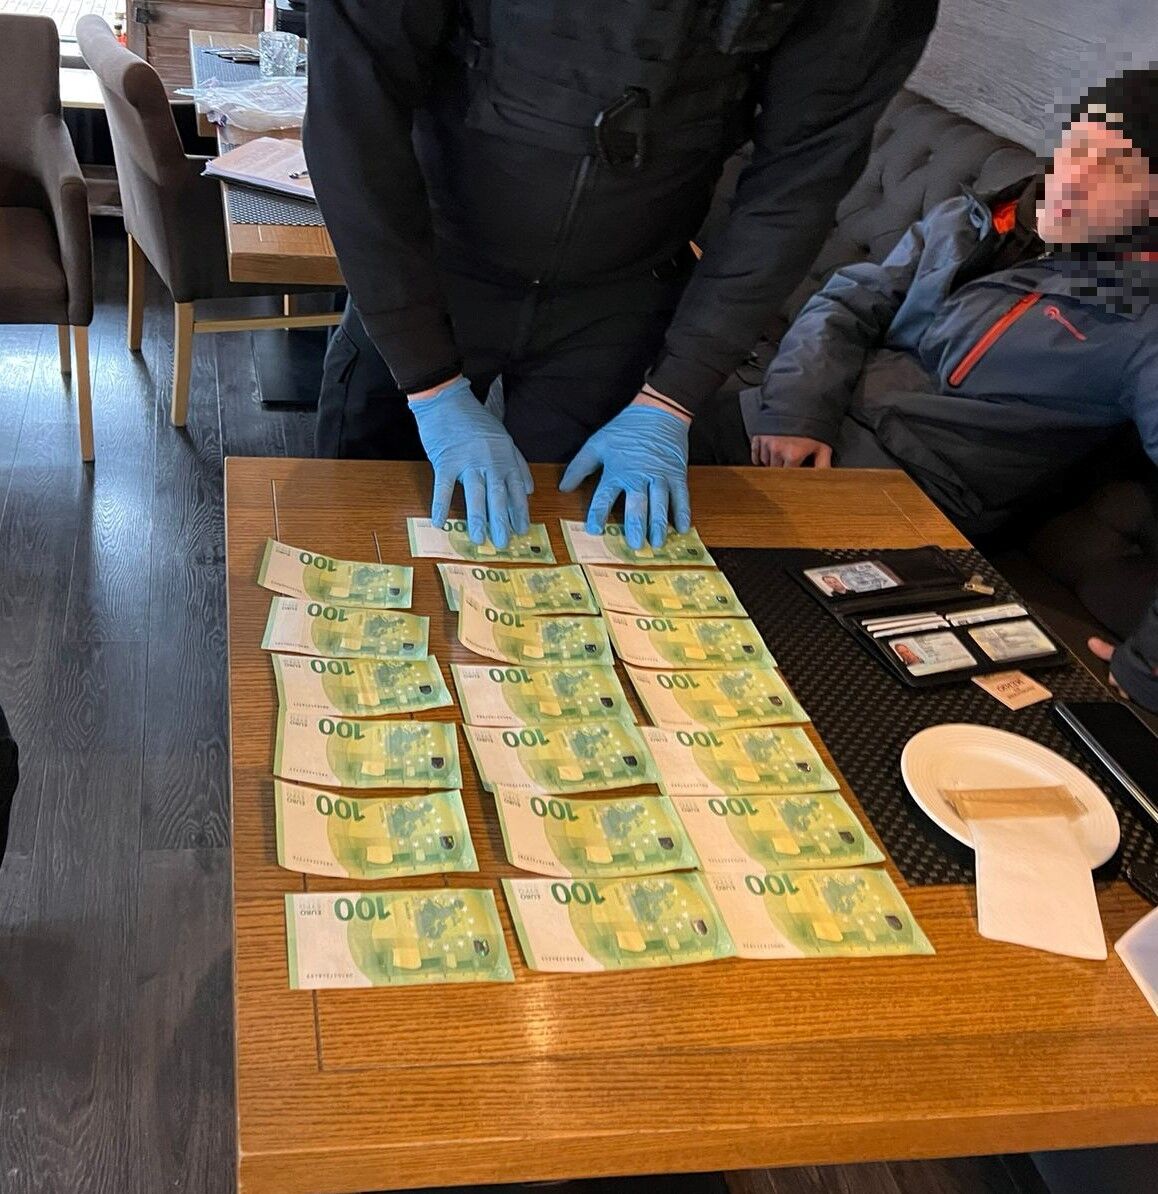 В Киеве задержали мужчину, который за 2 тыс. евро продавал доступ к конфиденциальной информации украинцев. Фото